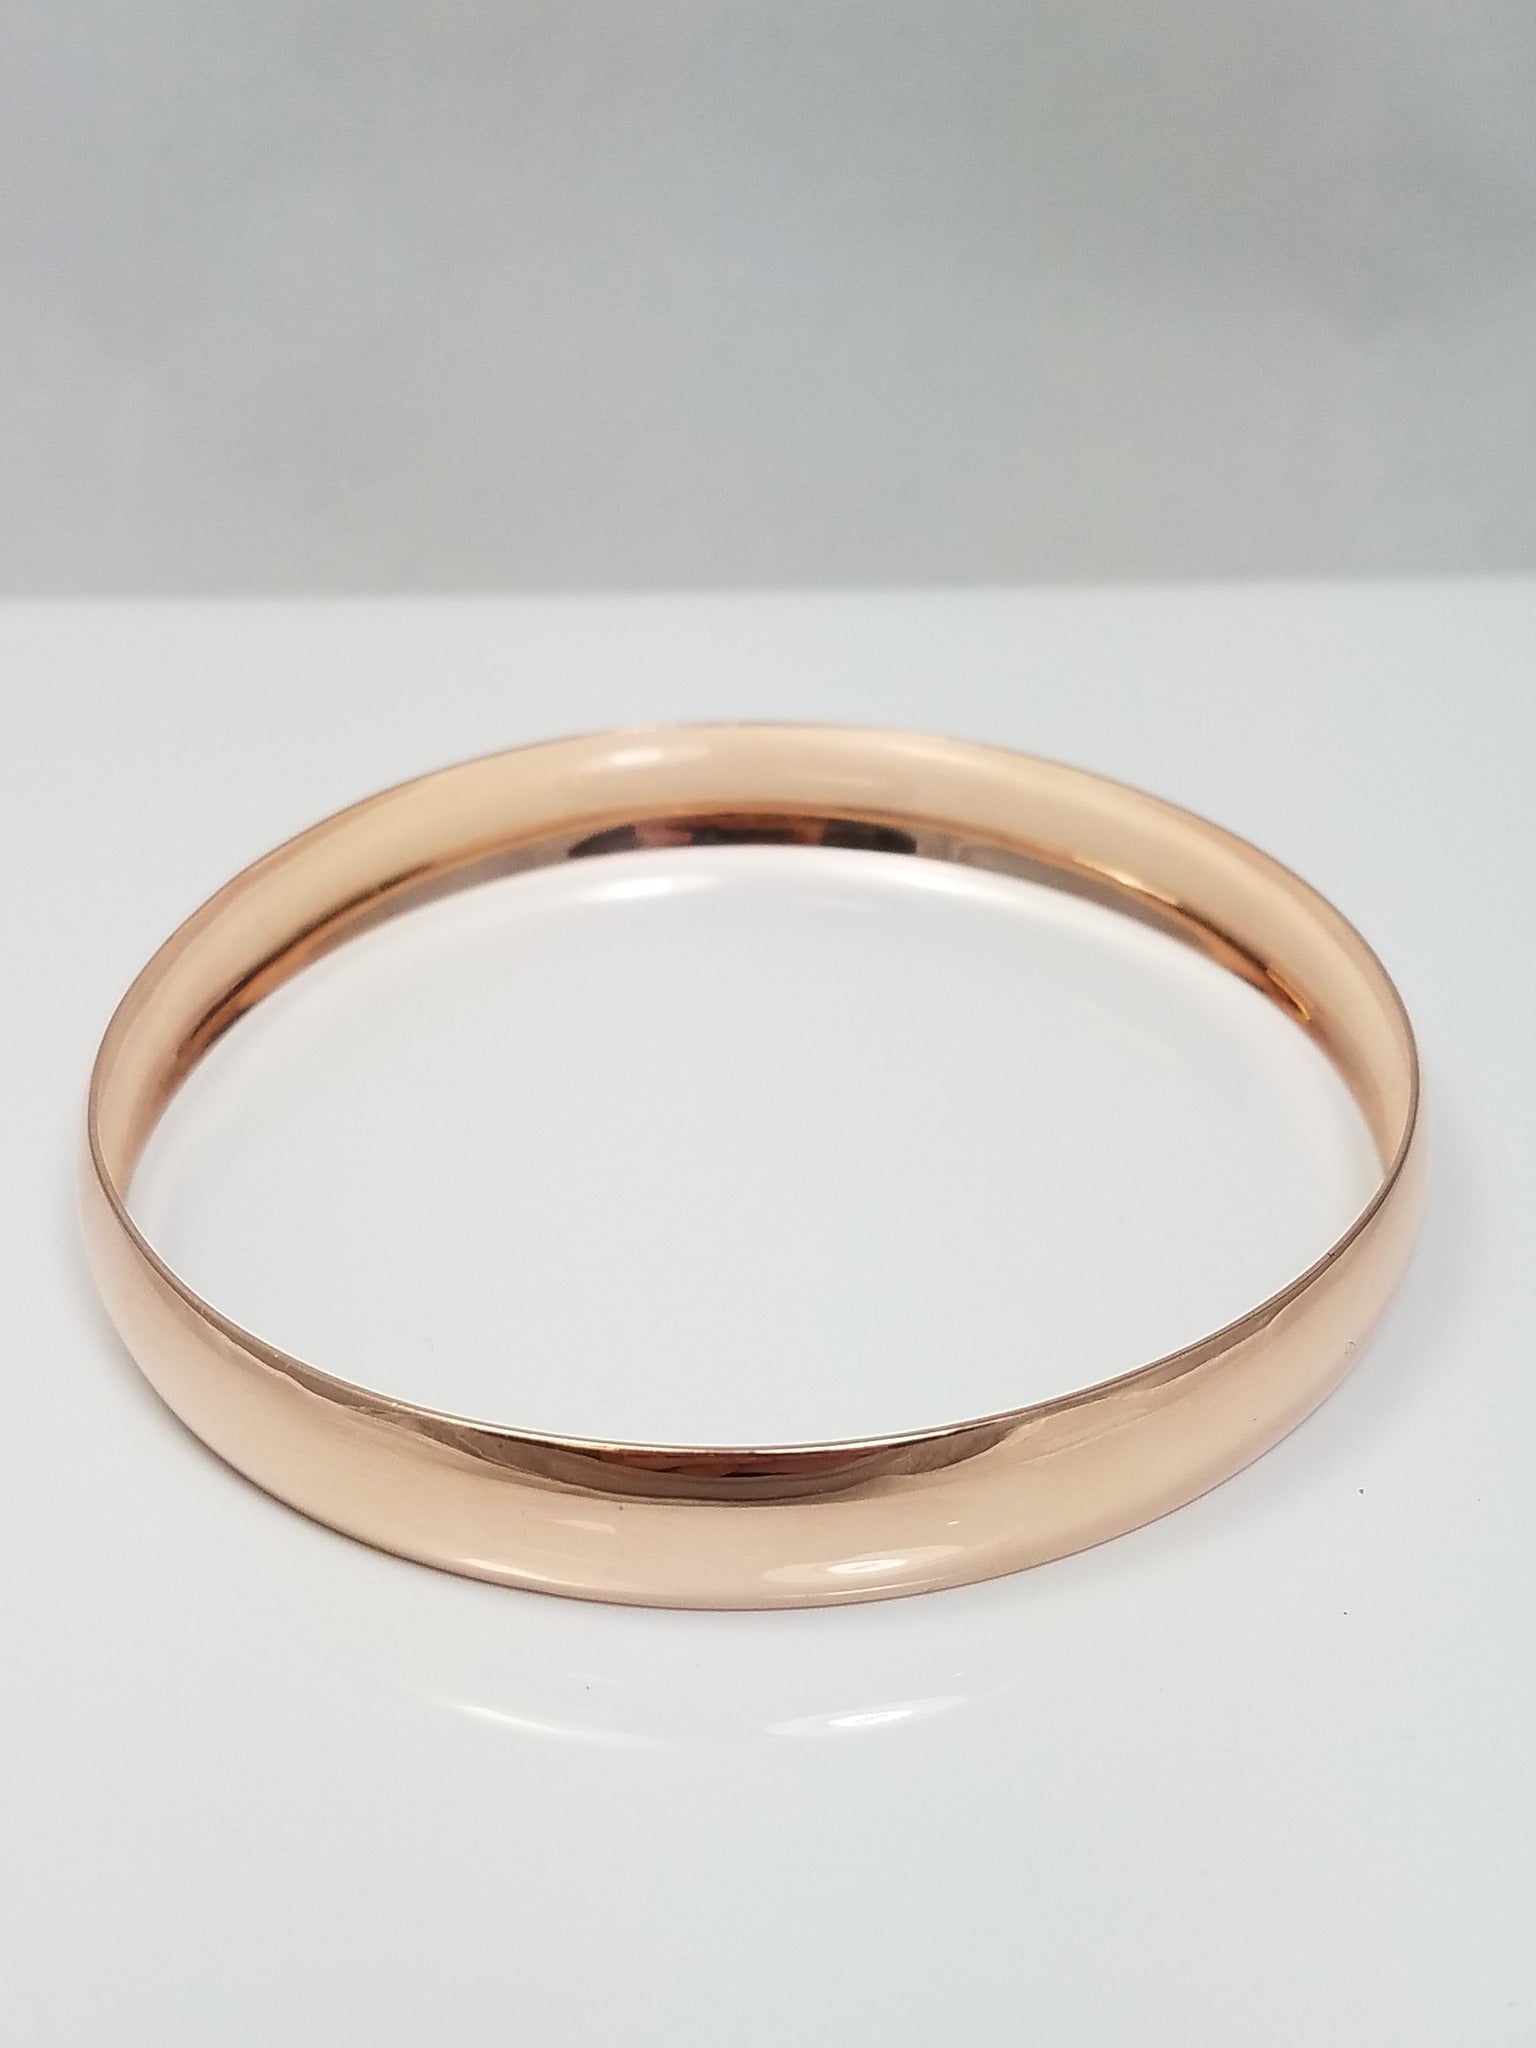 14k Rose Gold Concave Slip On Bangle Bracelet